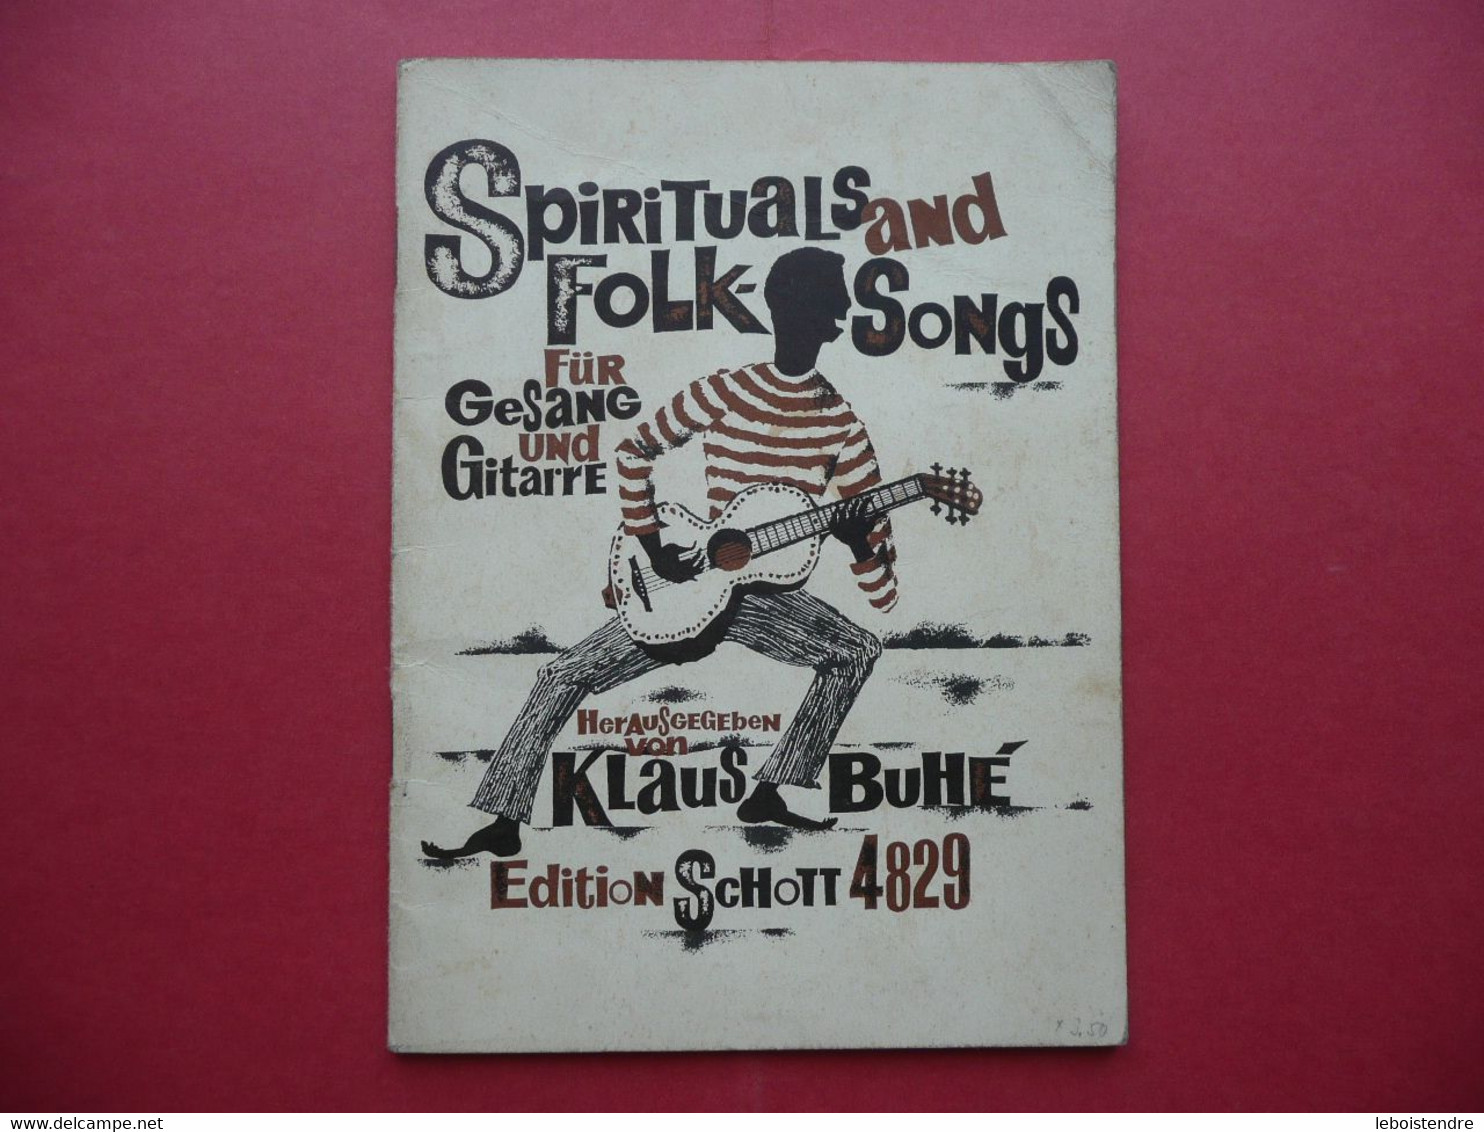 SPIRITUALS AND FOLK SONGS FUR GESANG UND GUITARRE HERAUSGEGEBEN VON KLAUS BUHE EDITION SCHOTT 4829 PARTITIONS - Música